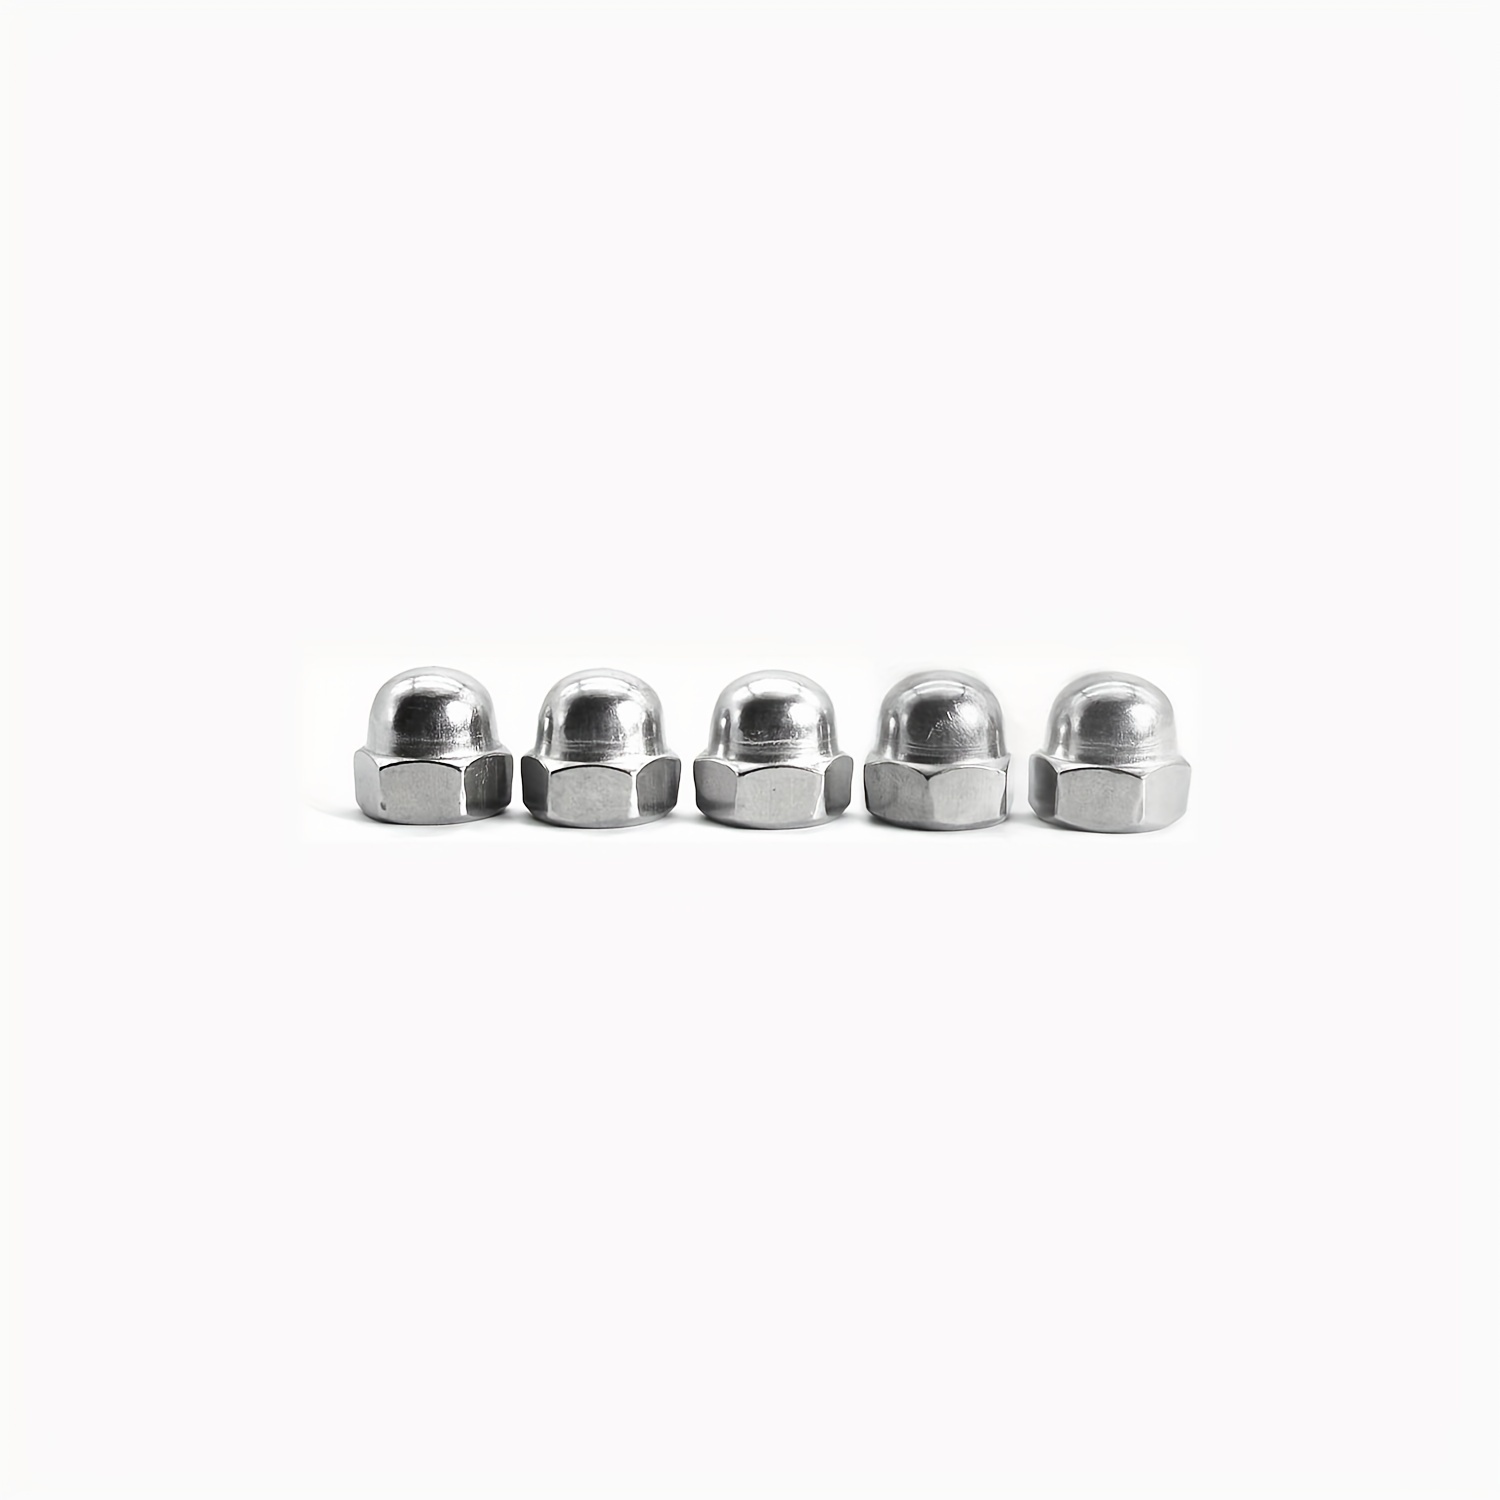 20 16 18 13 M8 X 1.25 Stainless Steel Hex Nuts Lock Nuts - Temu